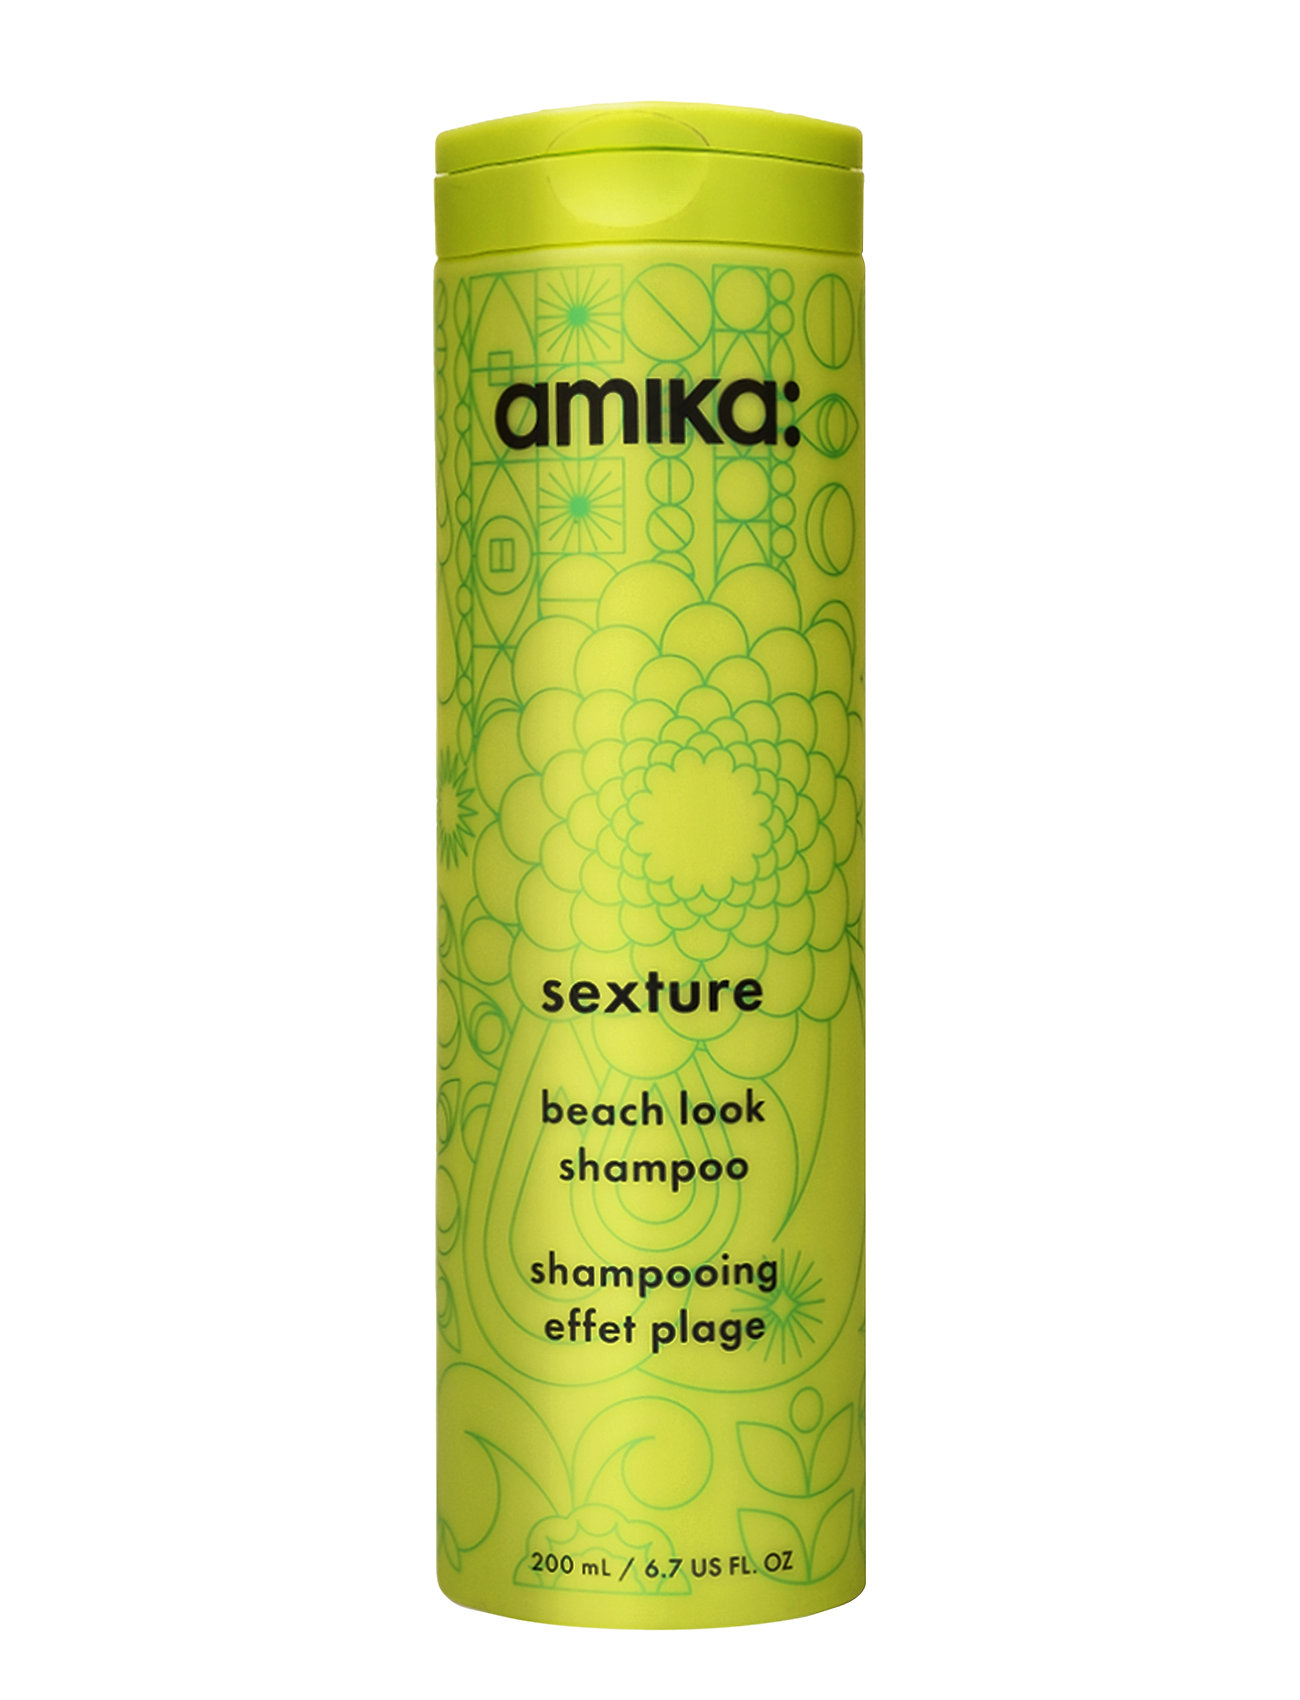 Amika sexture beach look shampoo reviews